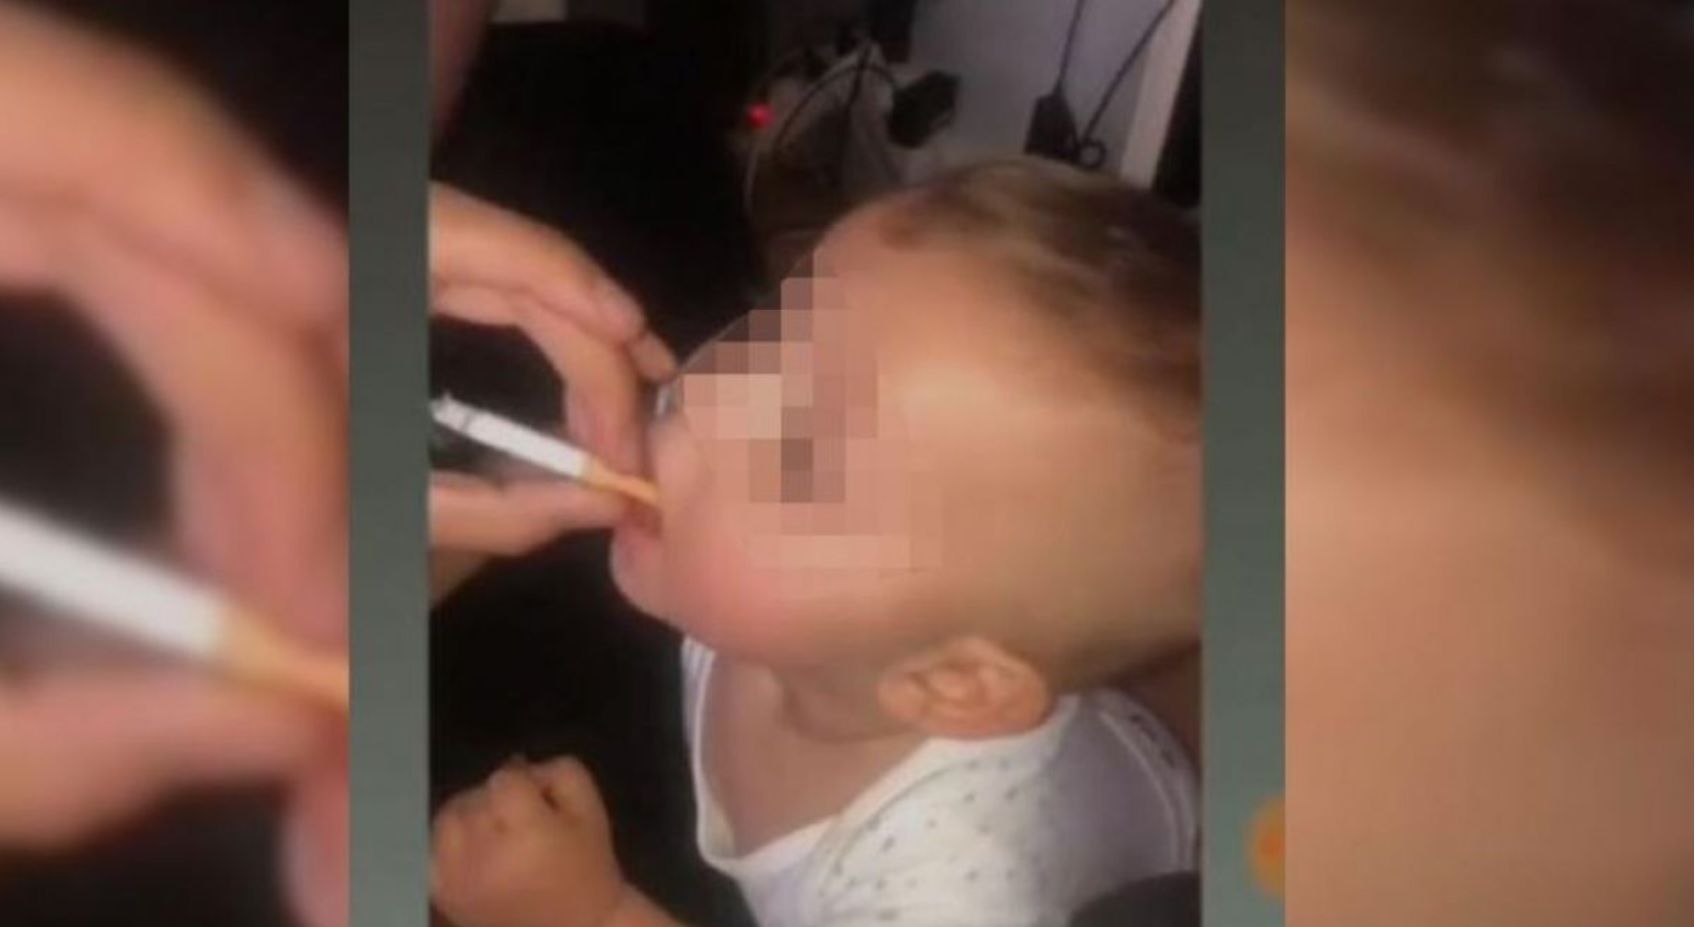 Por la reacción del bebé, al parecer fumar frente a él era una práctica común Foto: Impresión de pantalla video de Instagram